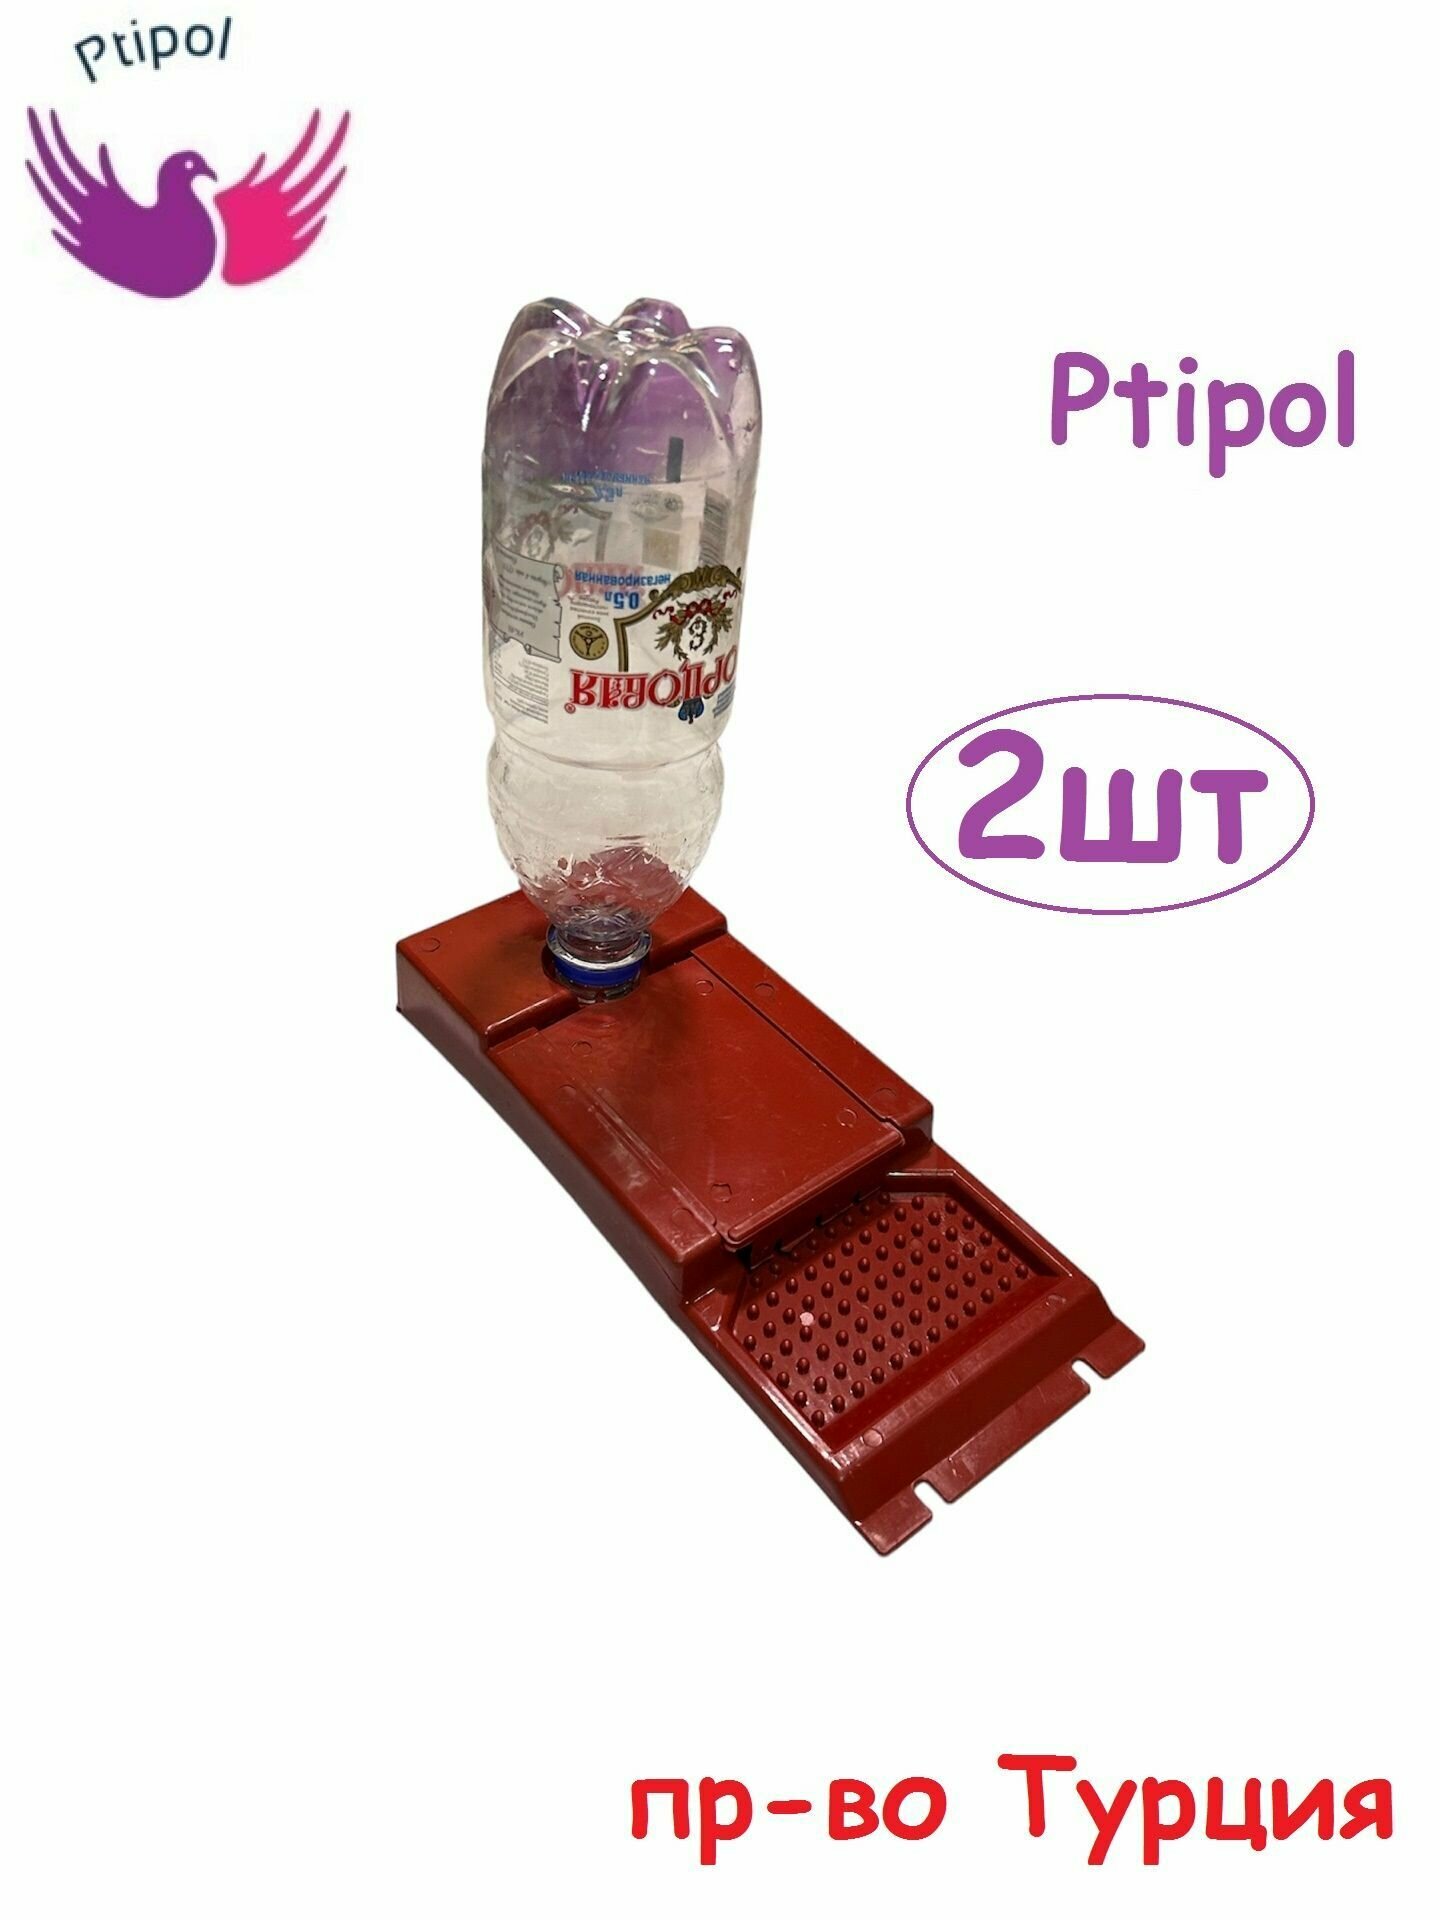 Пластиковая поилка для пчел под бутылку, пчеловодная кормушка для питьевой воды Ptipol 2шт пр-во Турция